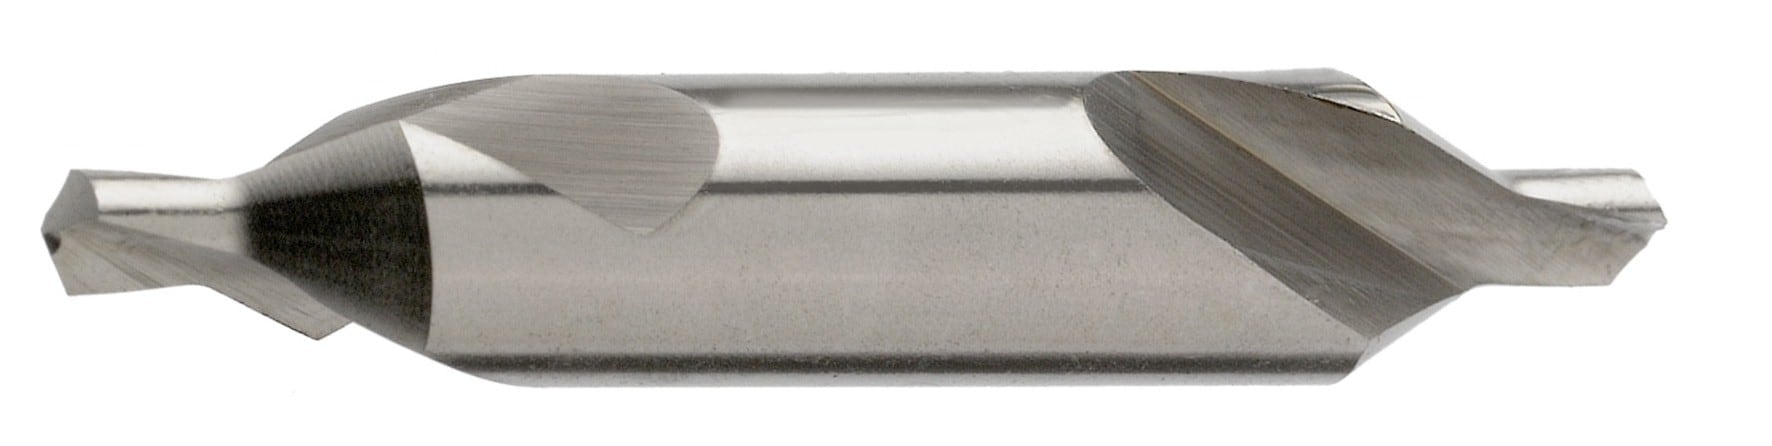 HSS-Zentrierbohrer 60°, Form A, DIN 333, blank